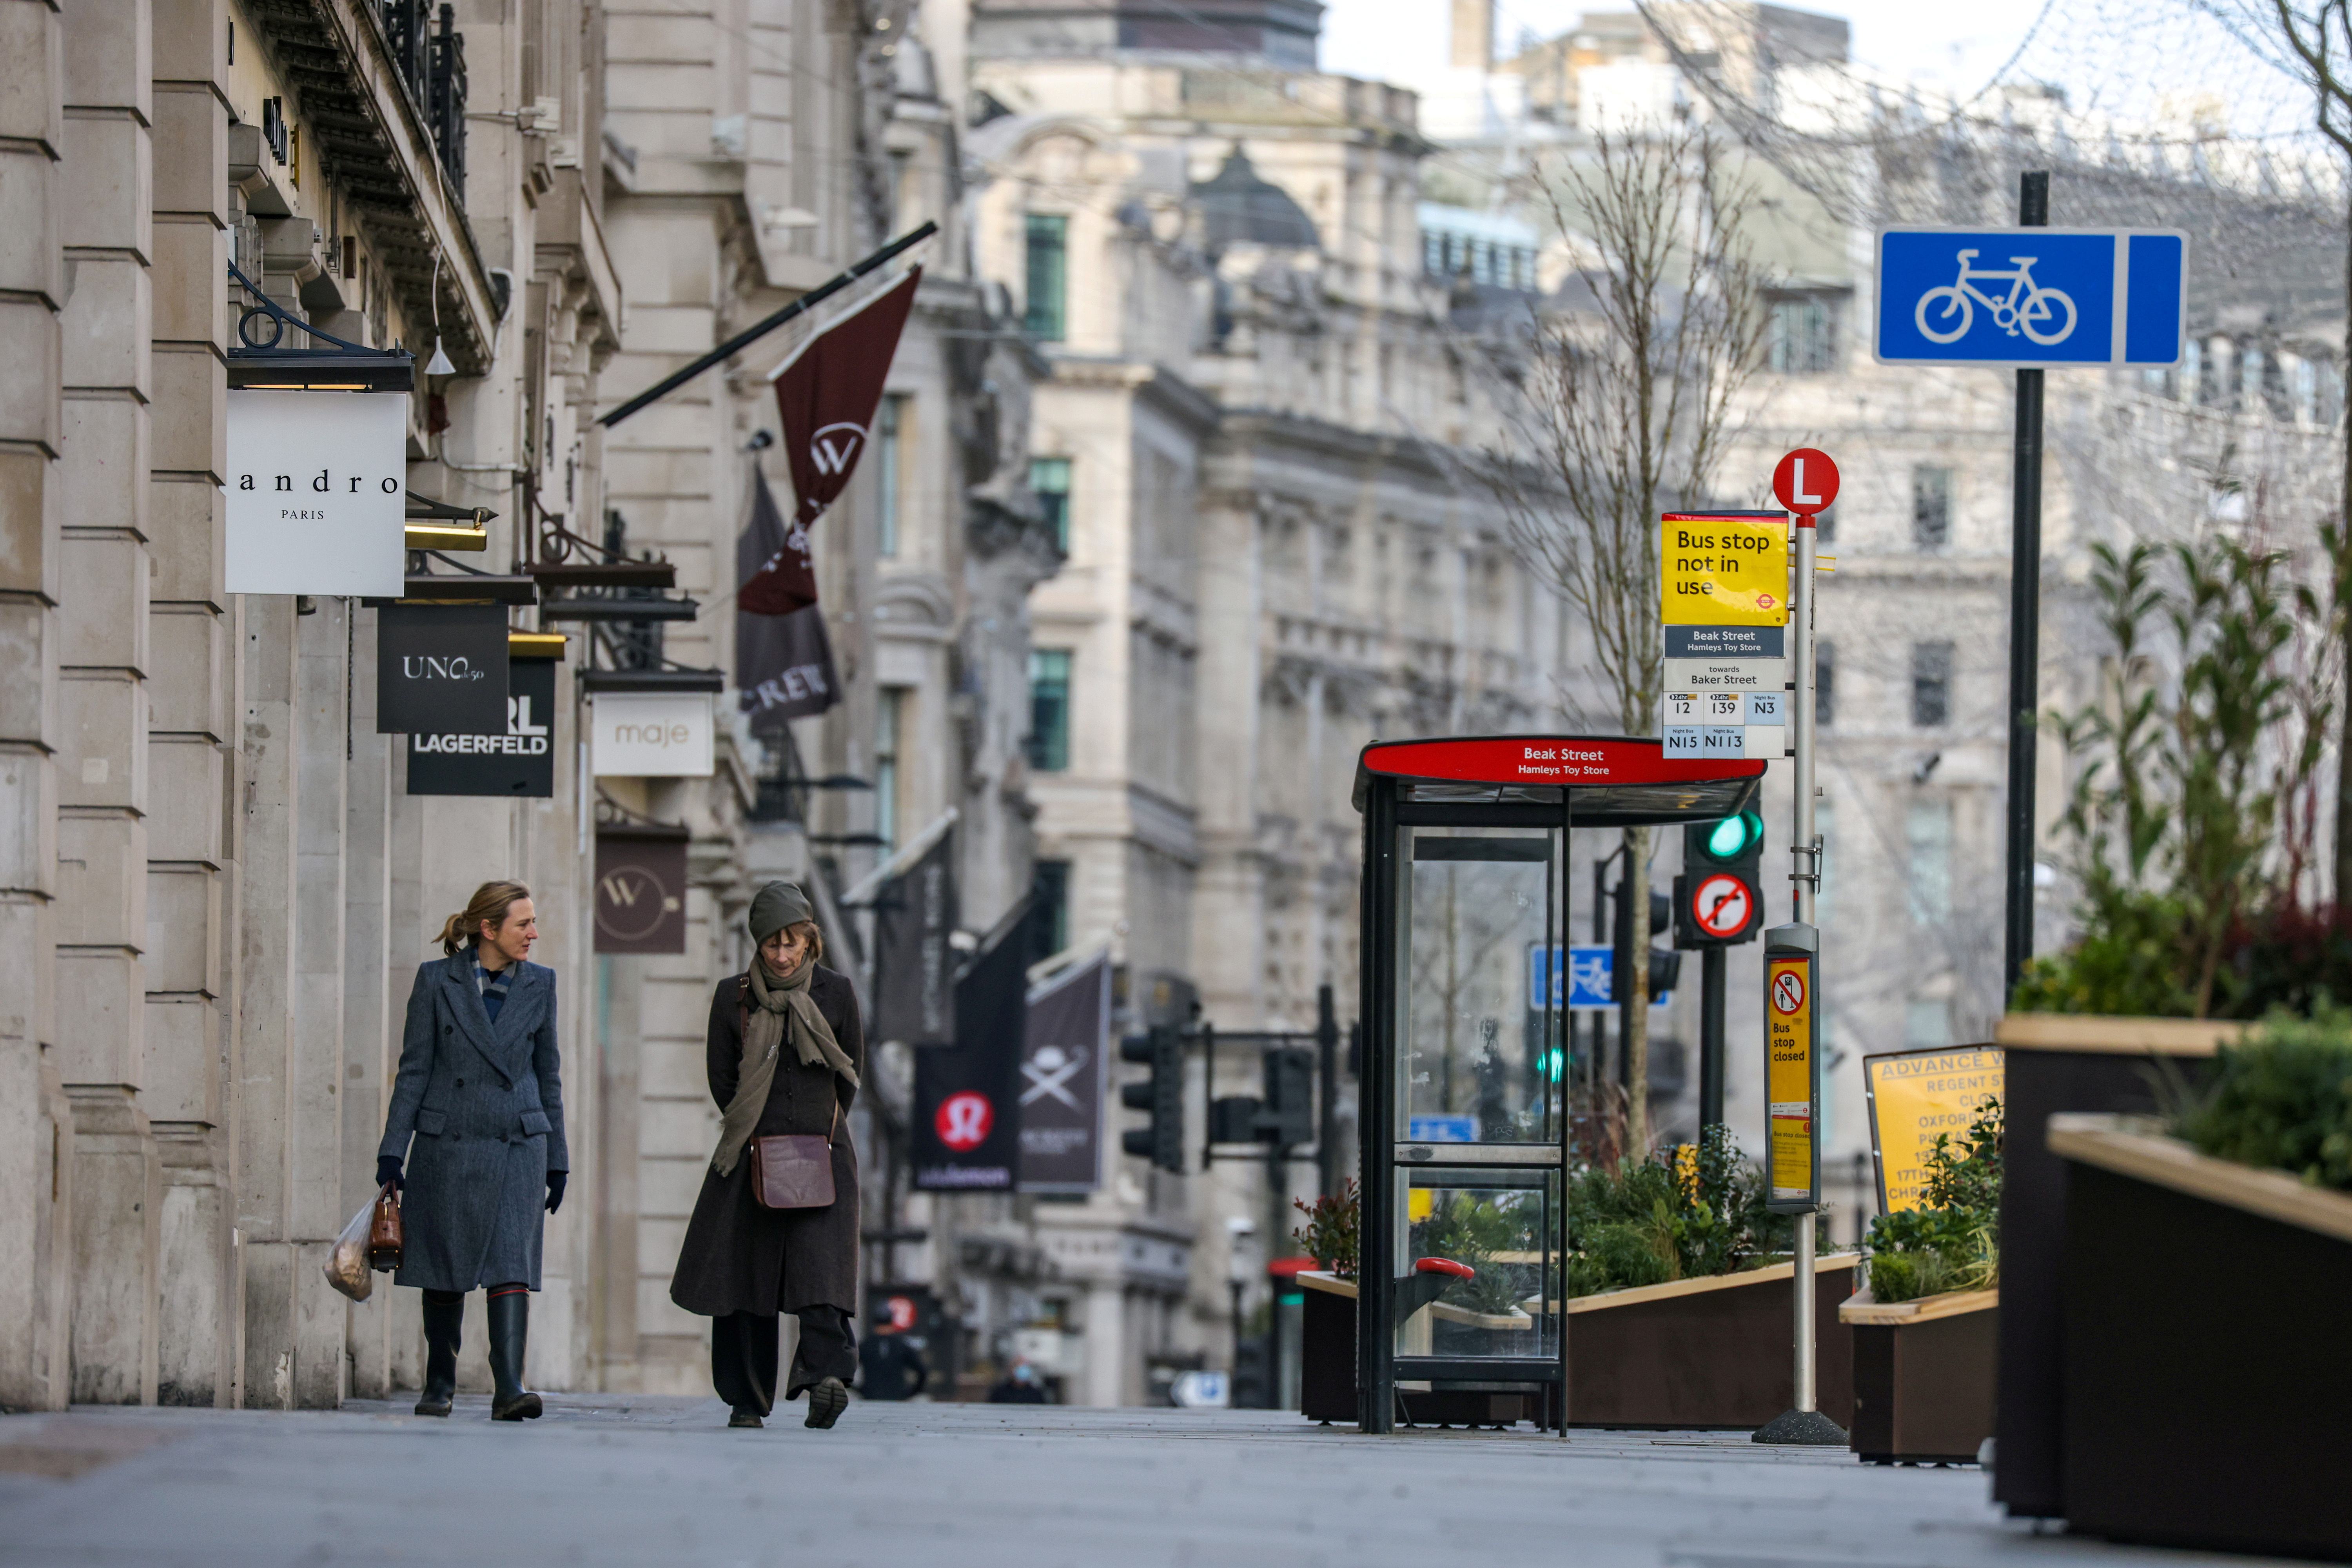 Two women walk down Regent Street in London